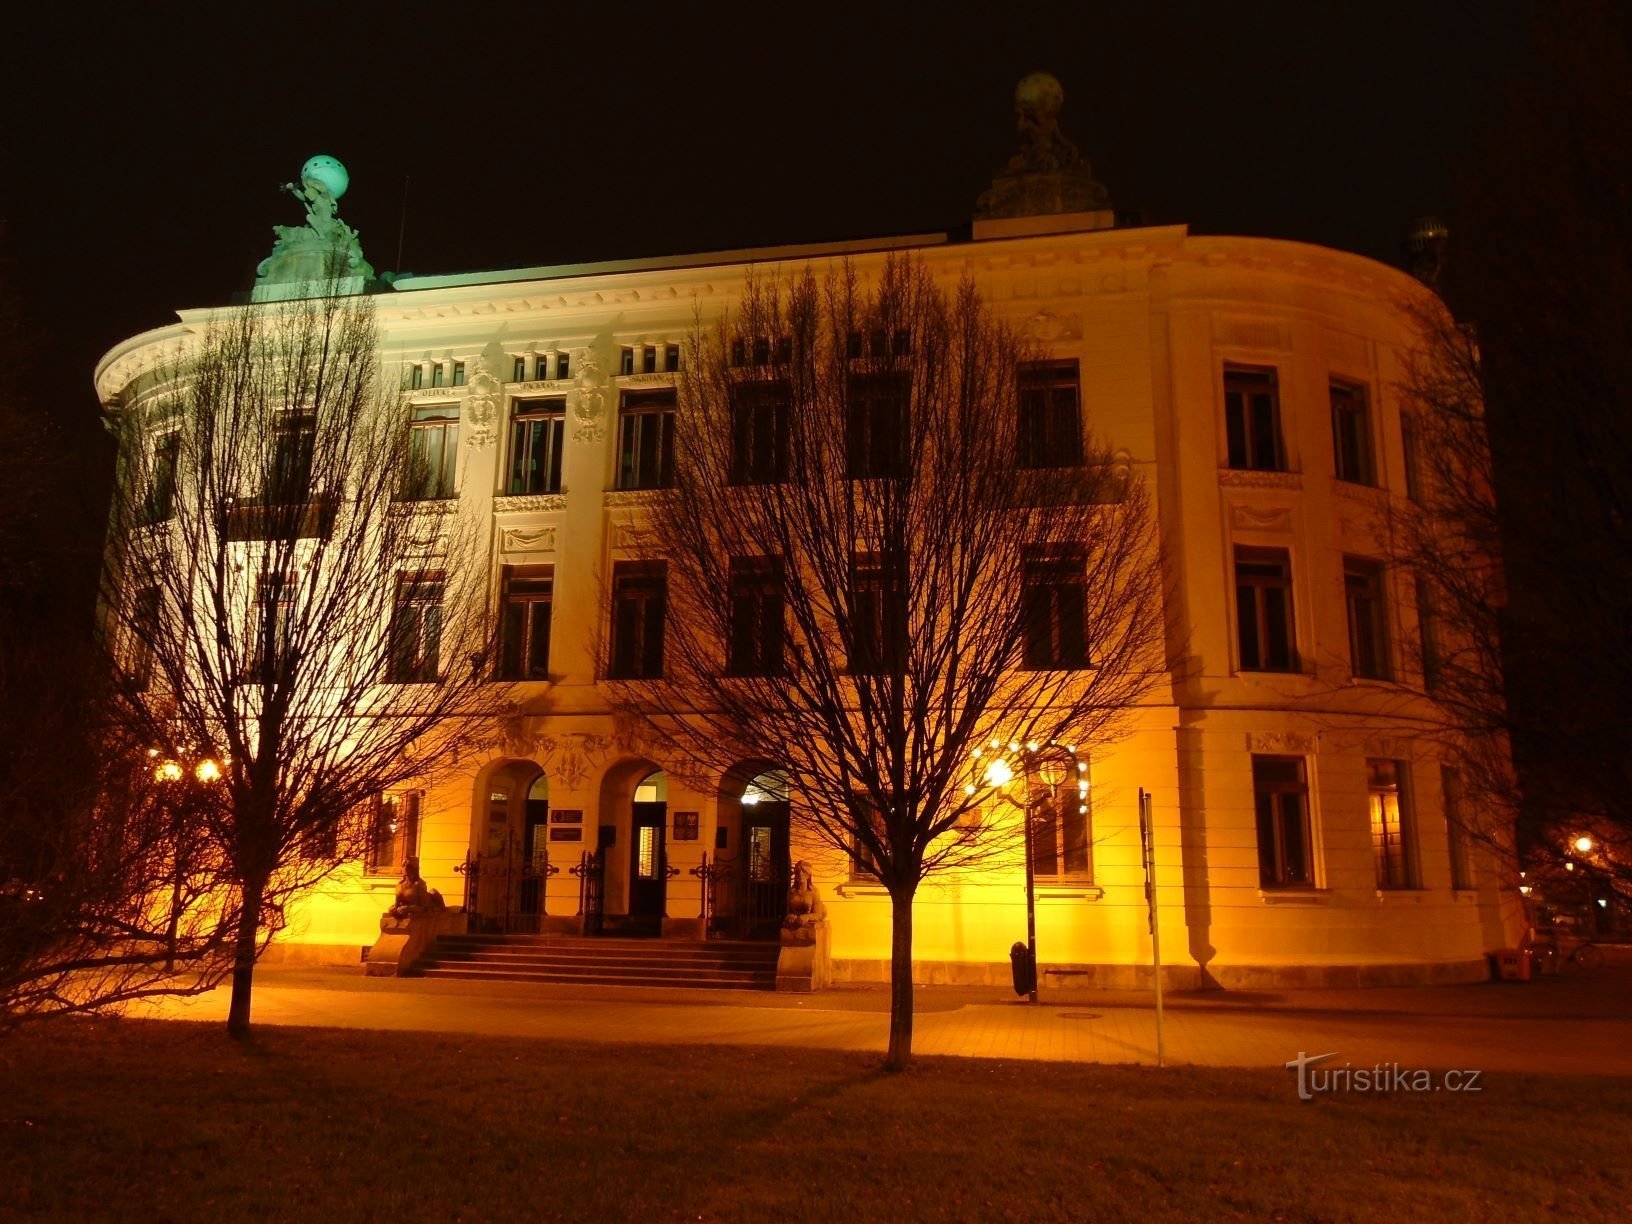 Gebäude der ehemaligen Wirtschaftsakademie (Hradec Králové, 3.12.2017. Dezember XNUMX)